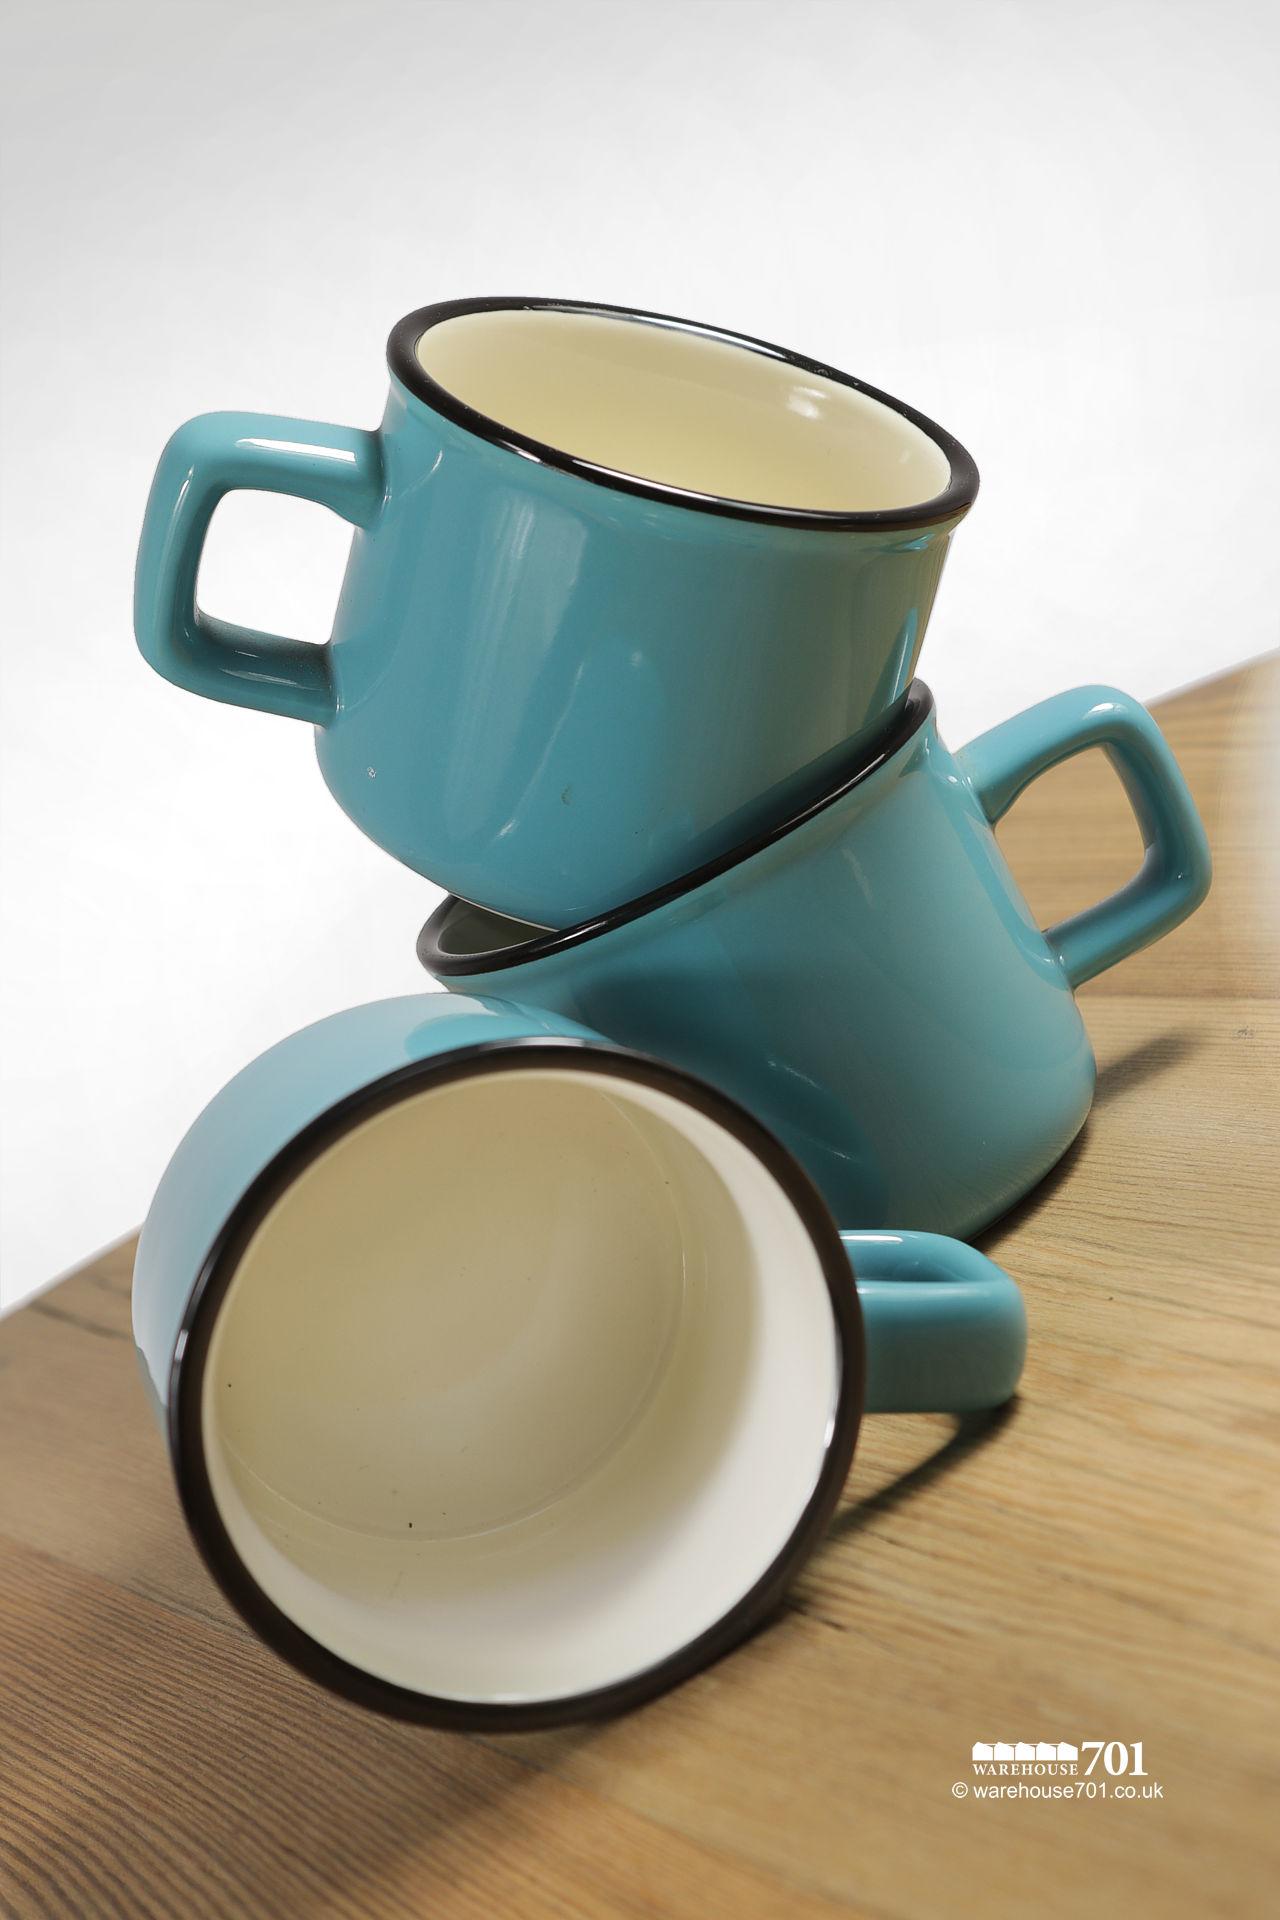 Blue and White Ceramic Espresso Coffee Mug